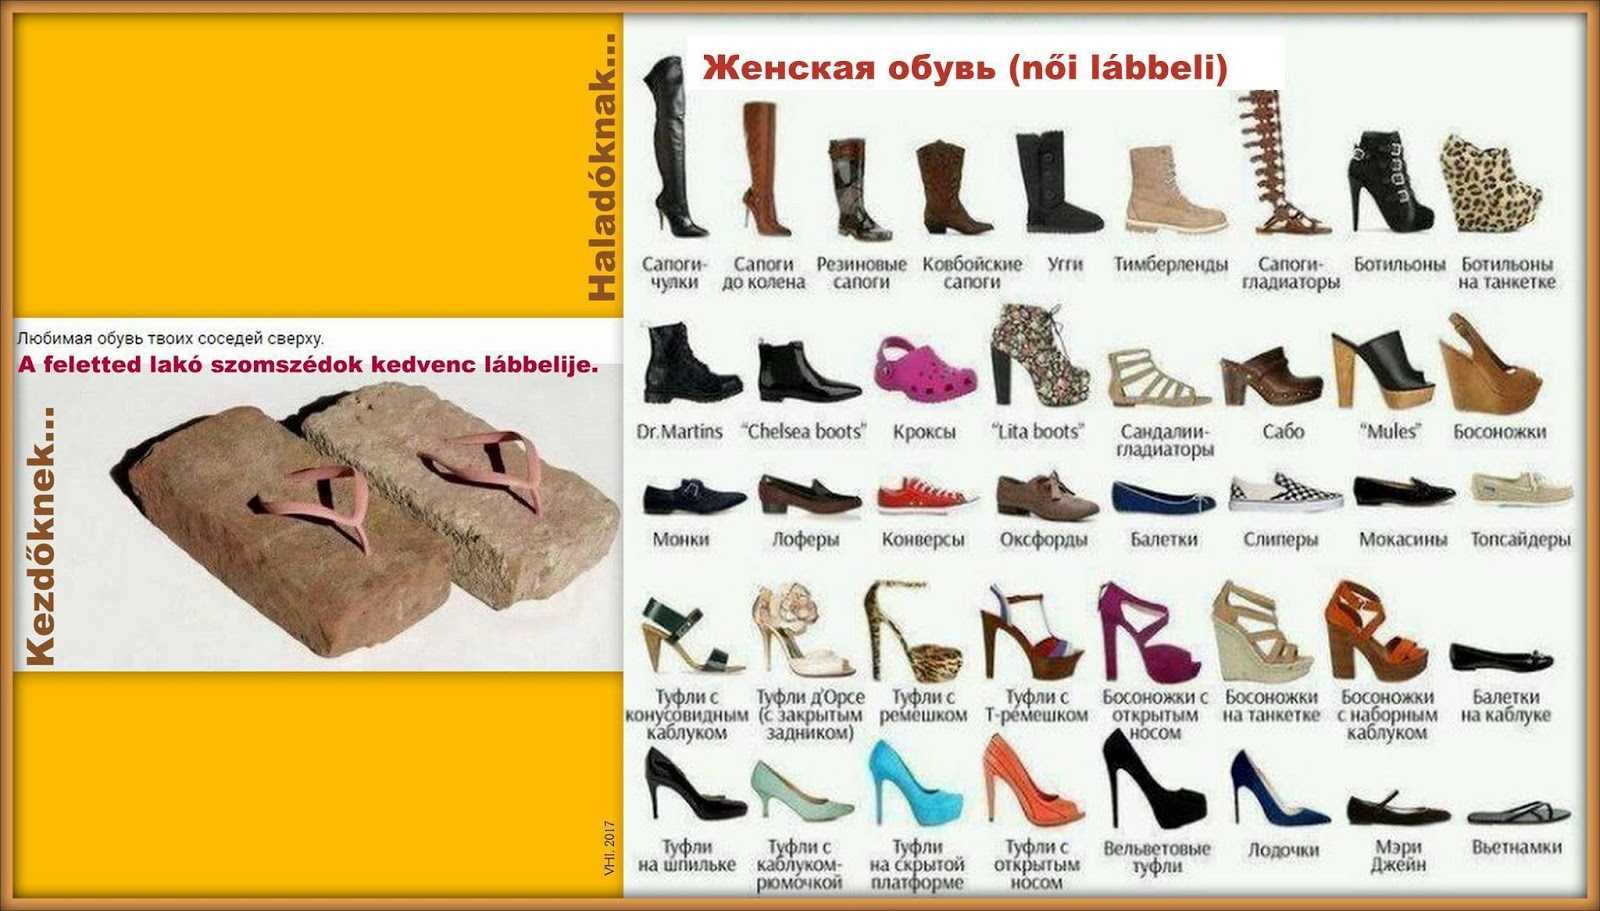 Название обуви список. Современные названия обуви. Название всей обуви женской. Название туфель женских. Разновидности ботинок женских.